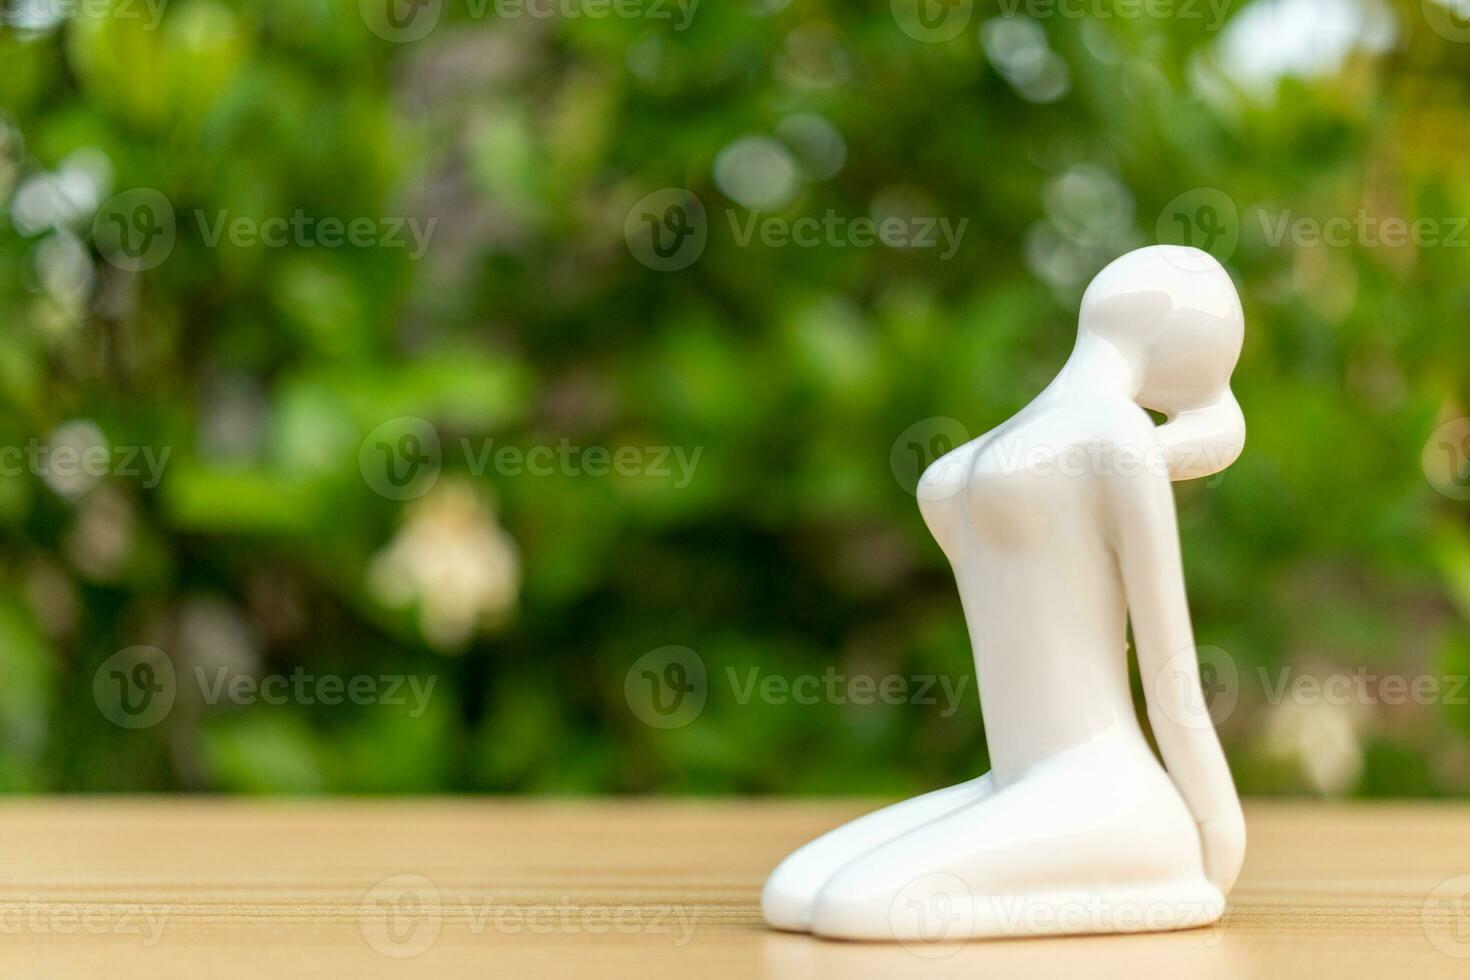 cerámico yoga figurilla de mujer haciendo yoga actitud en de madera piso y verde hoja antecedentes foto